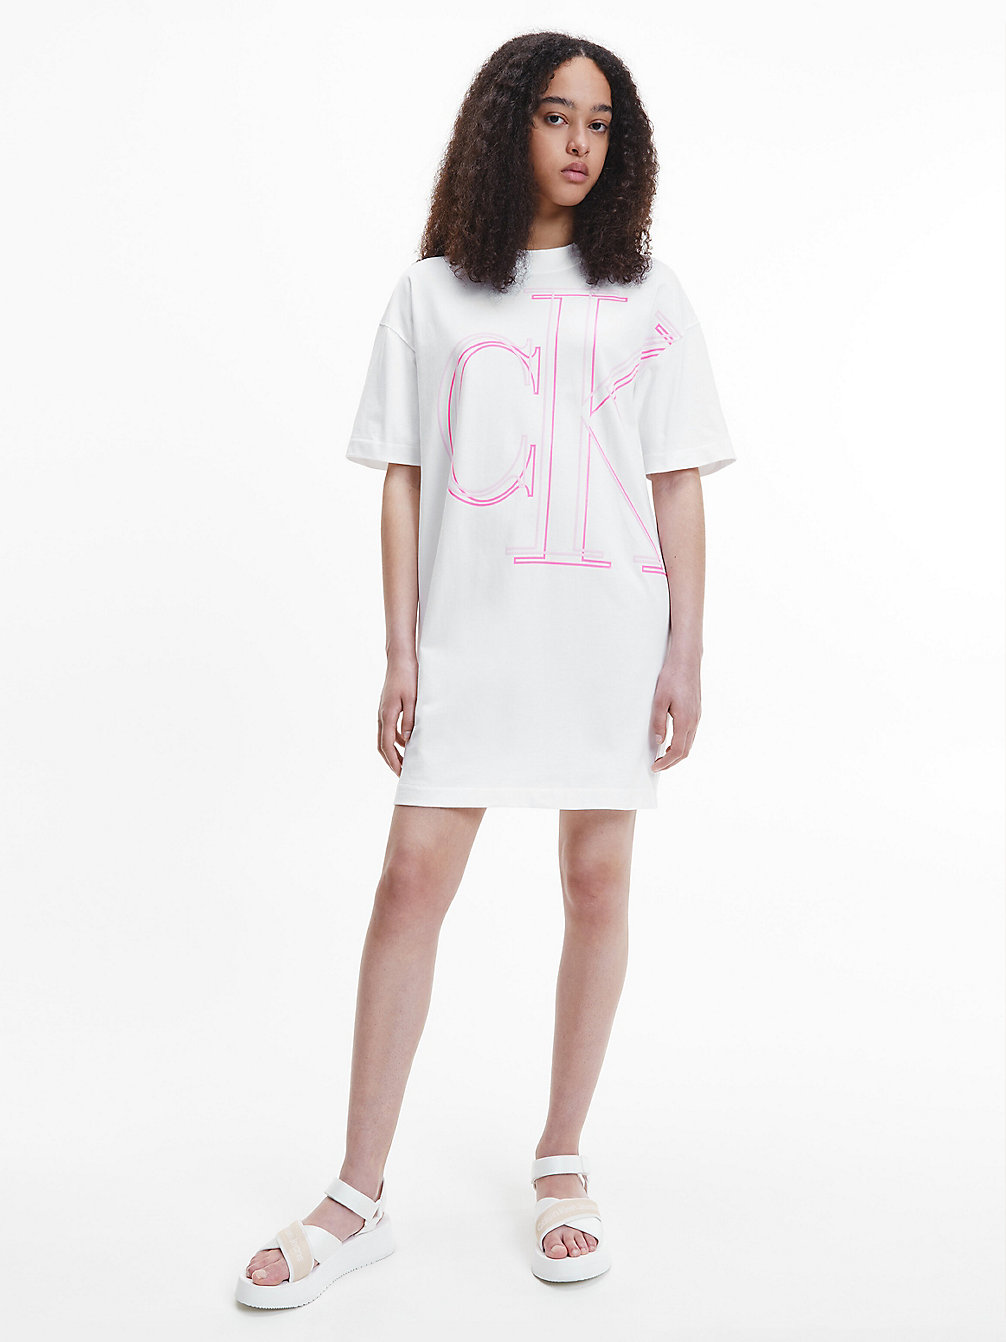 BRIGHT WHITE Abito A T-Shirt Con Monogramma Dal Taglio Relaxed undefined donna Calvin Klein